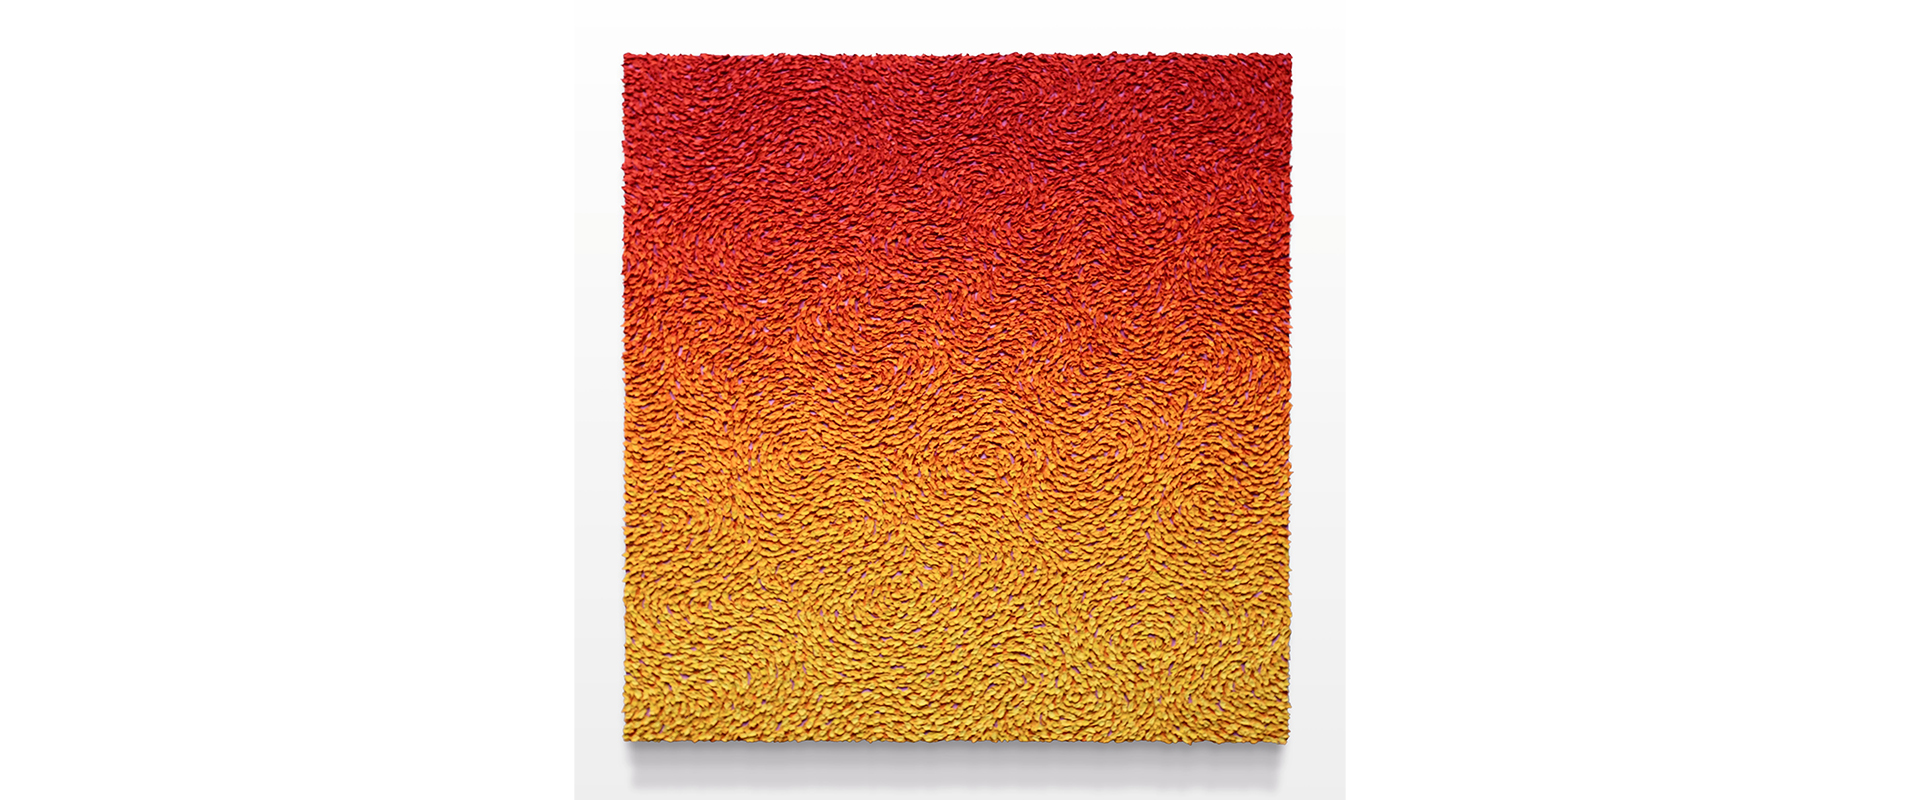 Robert Sagerman, “19,739” - 2021, Öl auf Leinwand, 122 x 117 cm